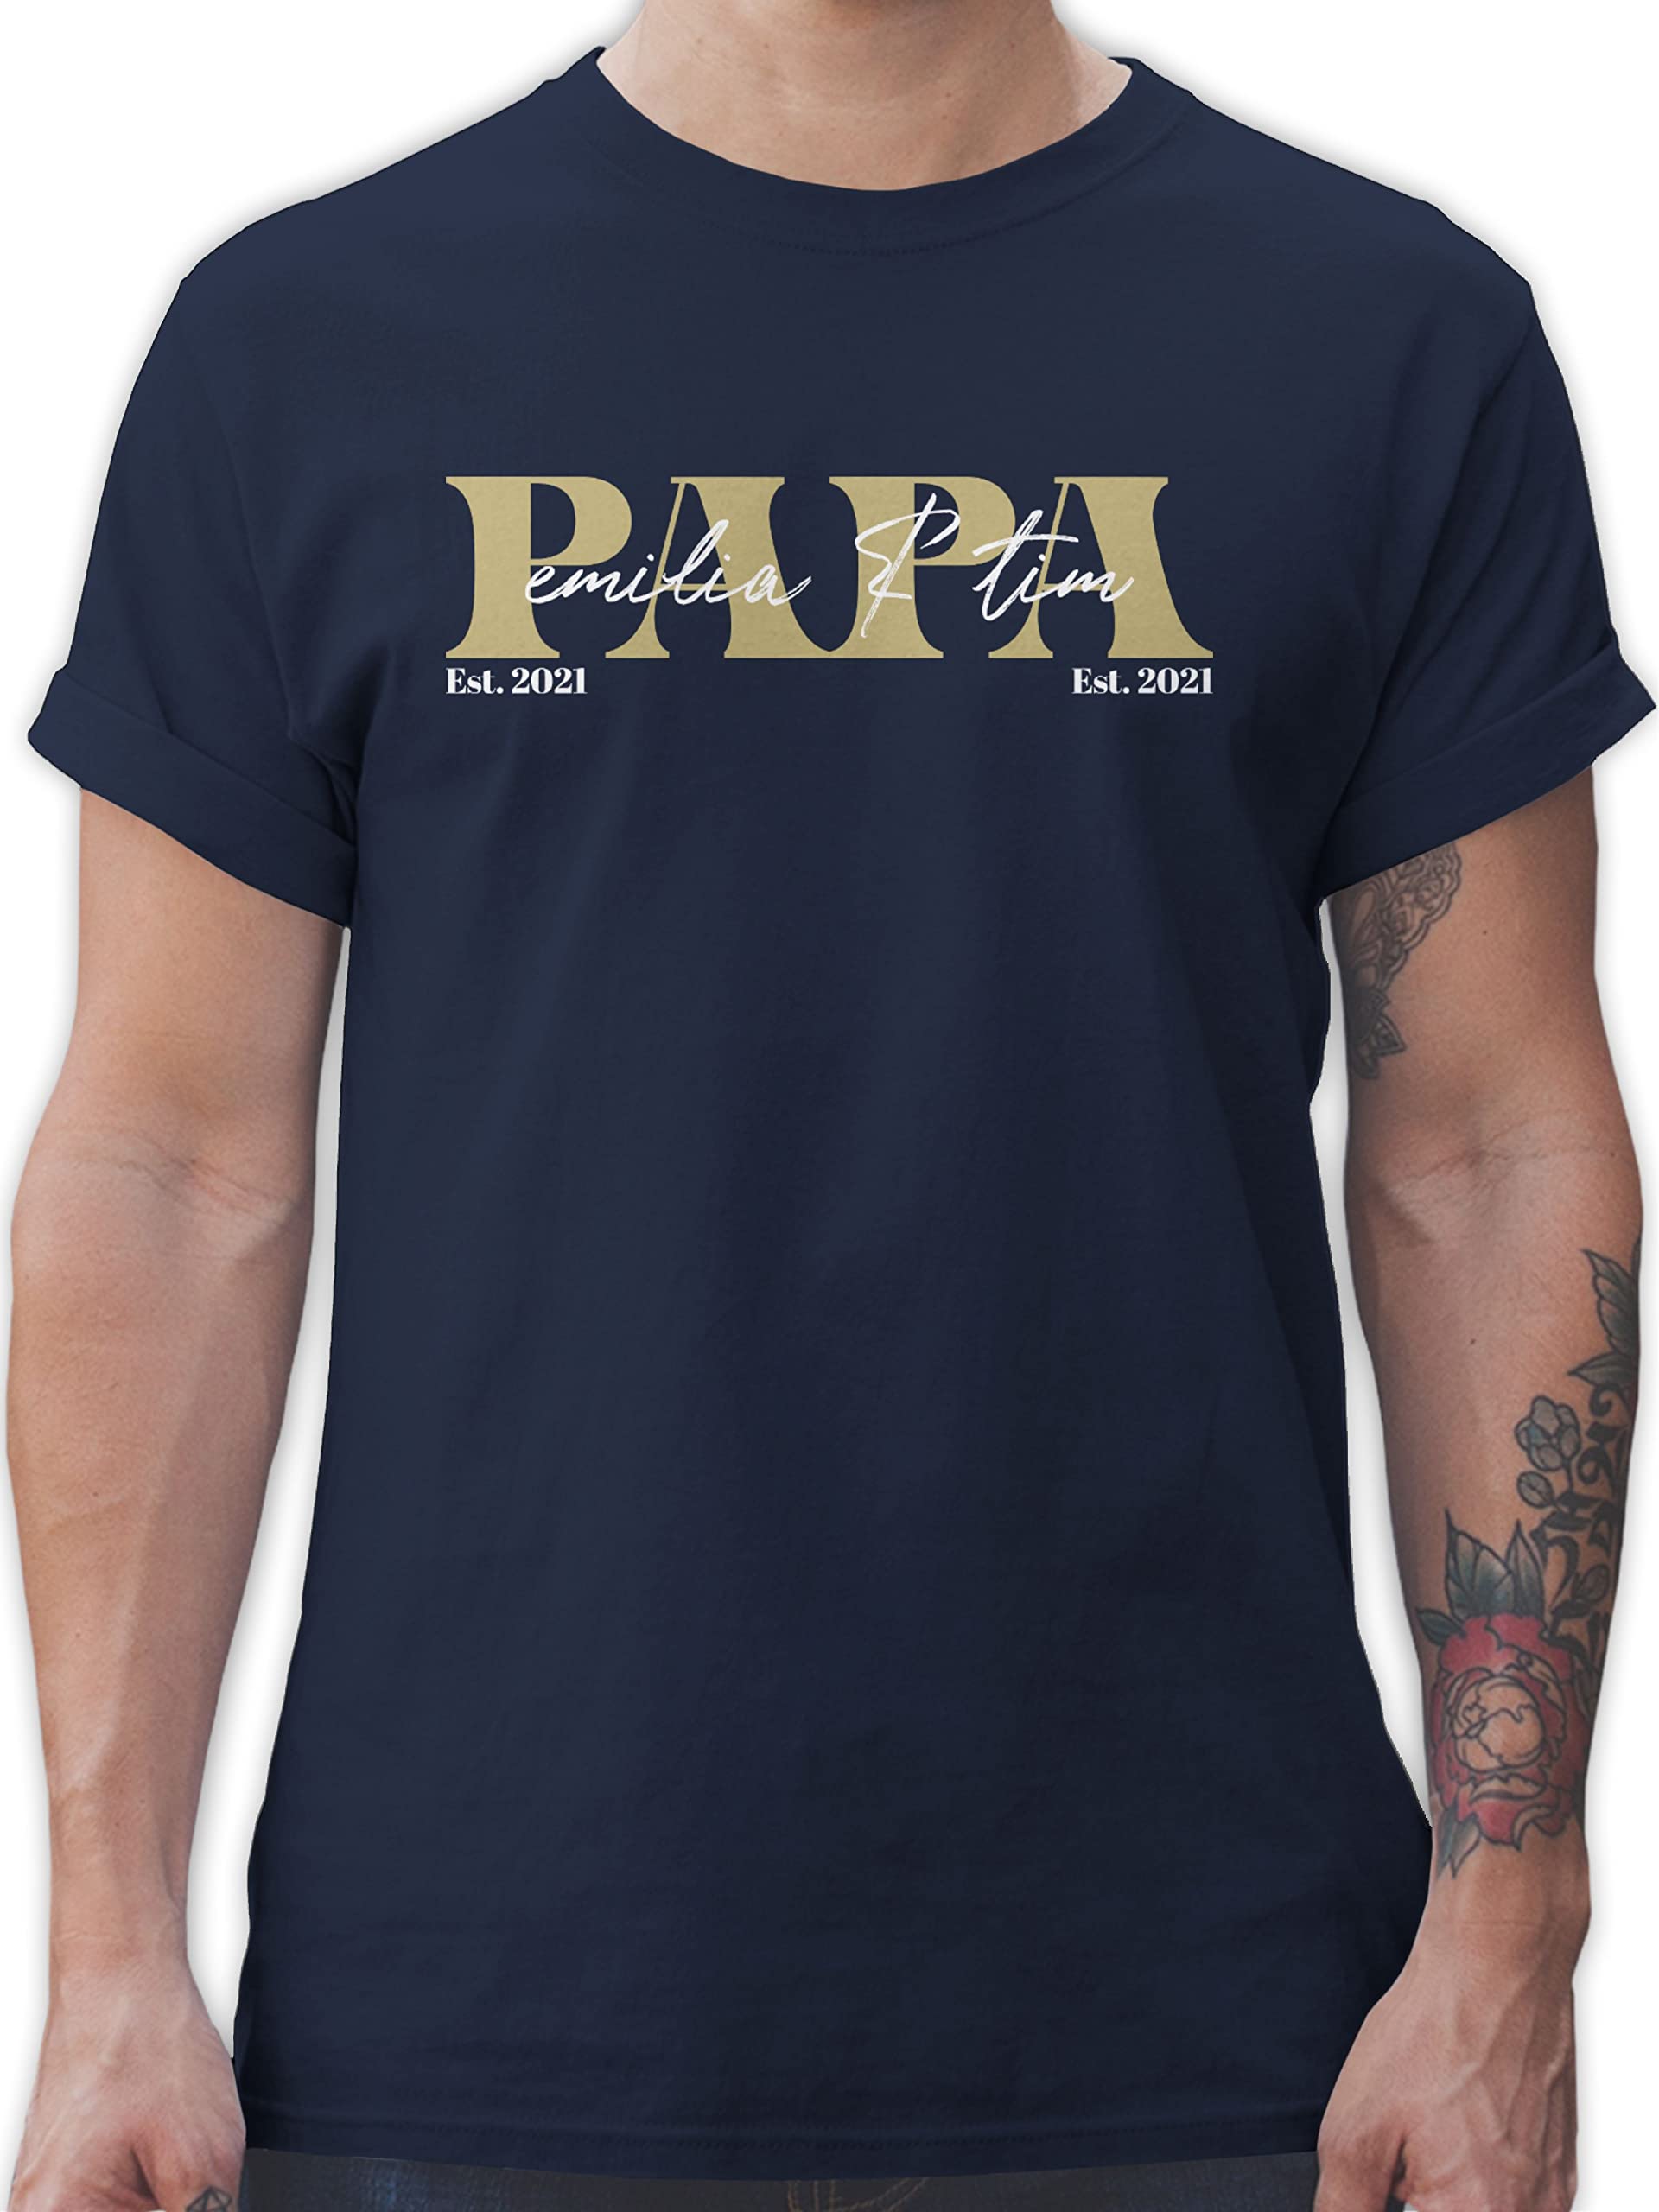 T-Shirt Herren - zum Vatertag - Papa Geschenk mit Namen Kinder Datum Geburtsjahr Weihnachten Geburtstag - 3XL - Navy Blau - Tshirt für väter männer Geschenke personalisierte Vater t-Shirts Sohn